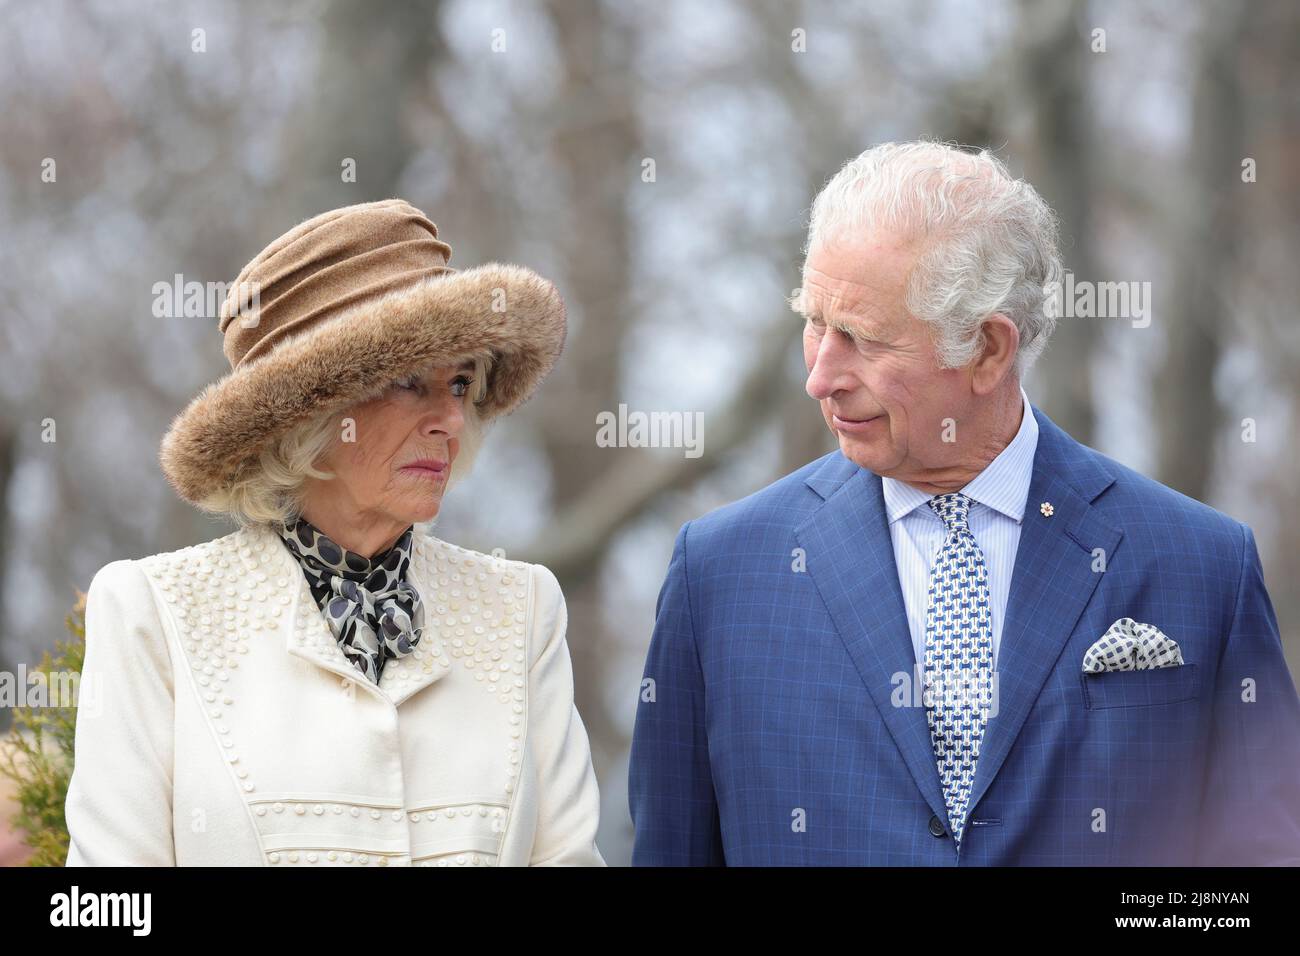 Der Prinz von Wales und die Herzogin von Cornwall nehmen an einer Zeremonie im Herzgarten im Government House in St. John's, Neufundland und Labrador Teil, während ihrer dreitägigen Reise nach Kanada anlässlich des Platin-Jubiläums der Königin. Bilddatum: Dienstag, 17. Mai 2022. Stockfoto